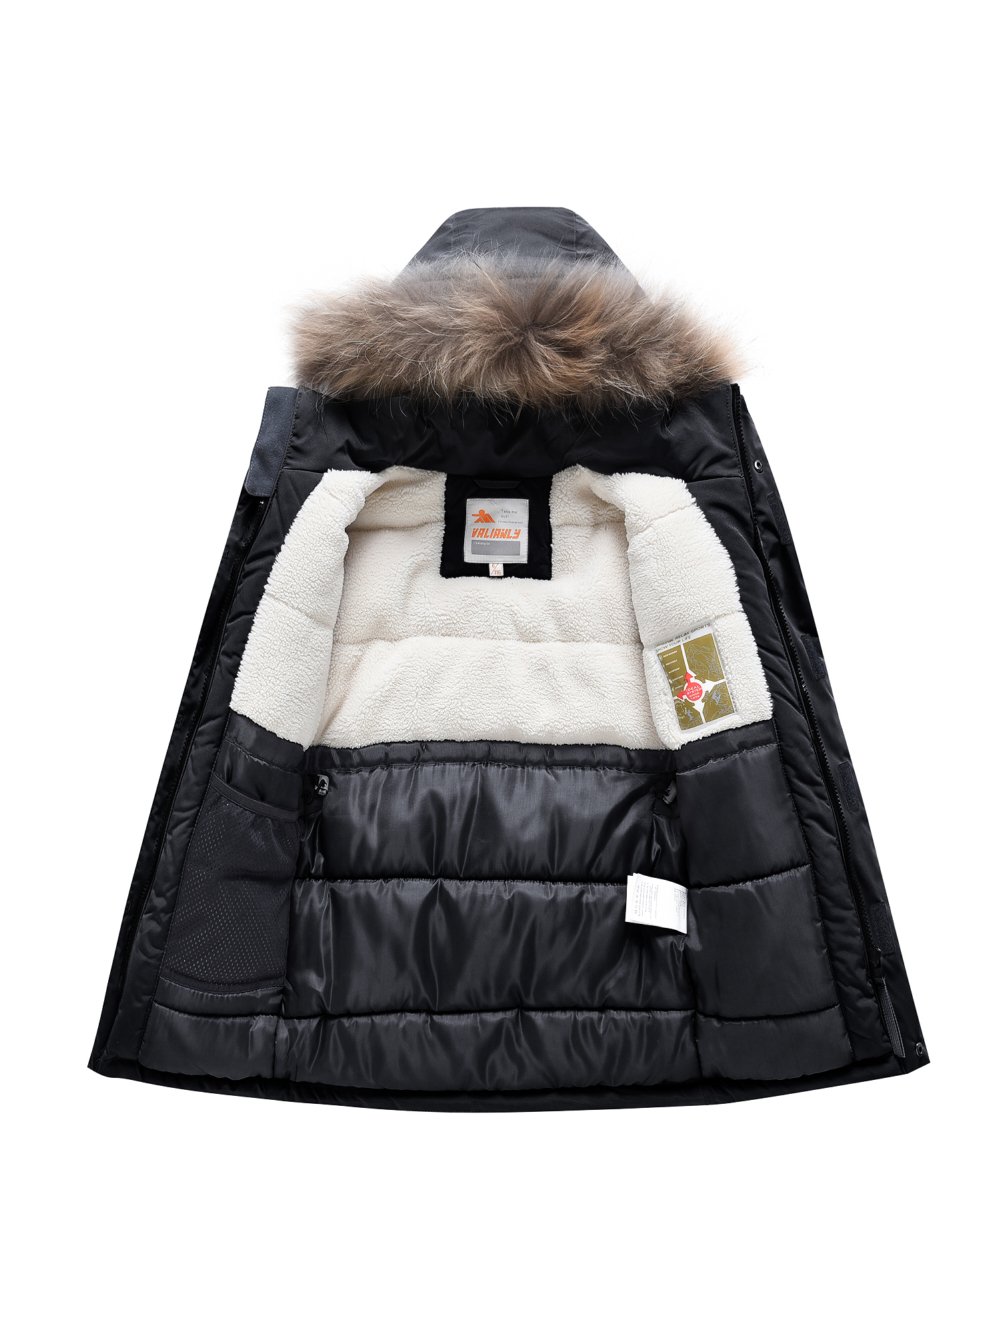 Купить куртку парку для мальчика оптом от производителя недорого в Москве 9331Ch 1